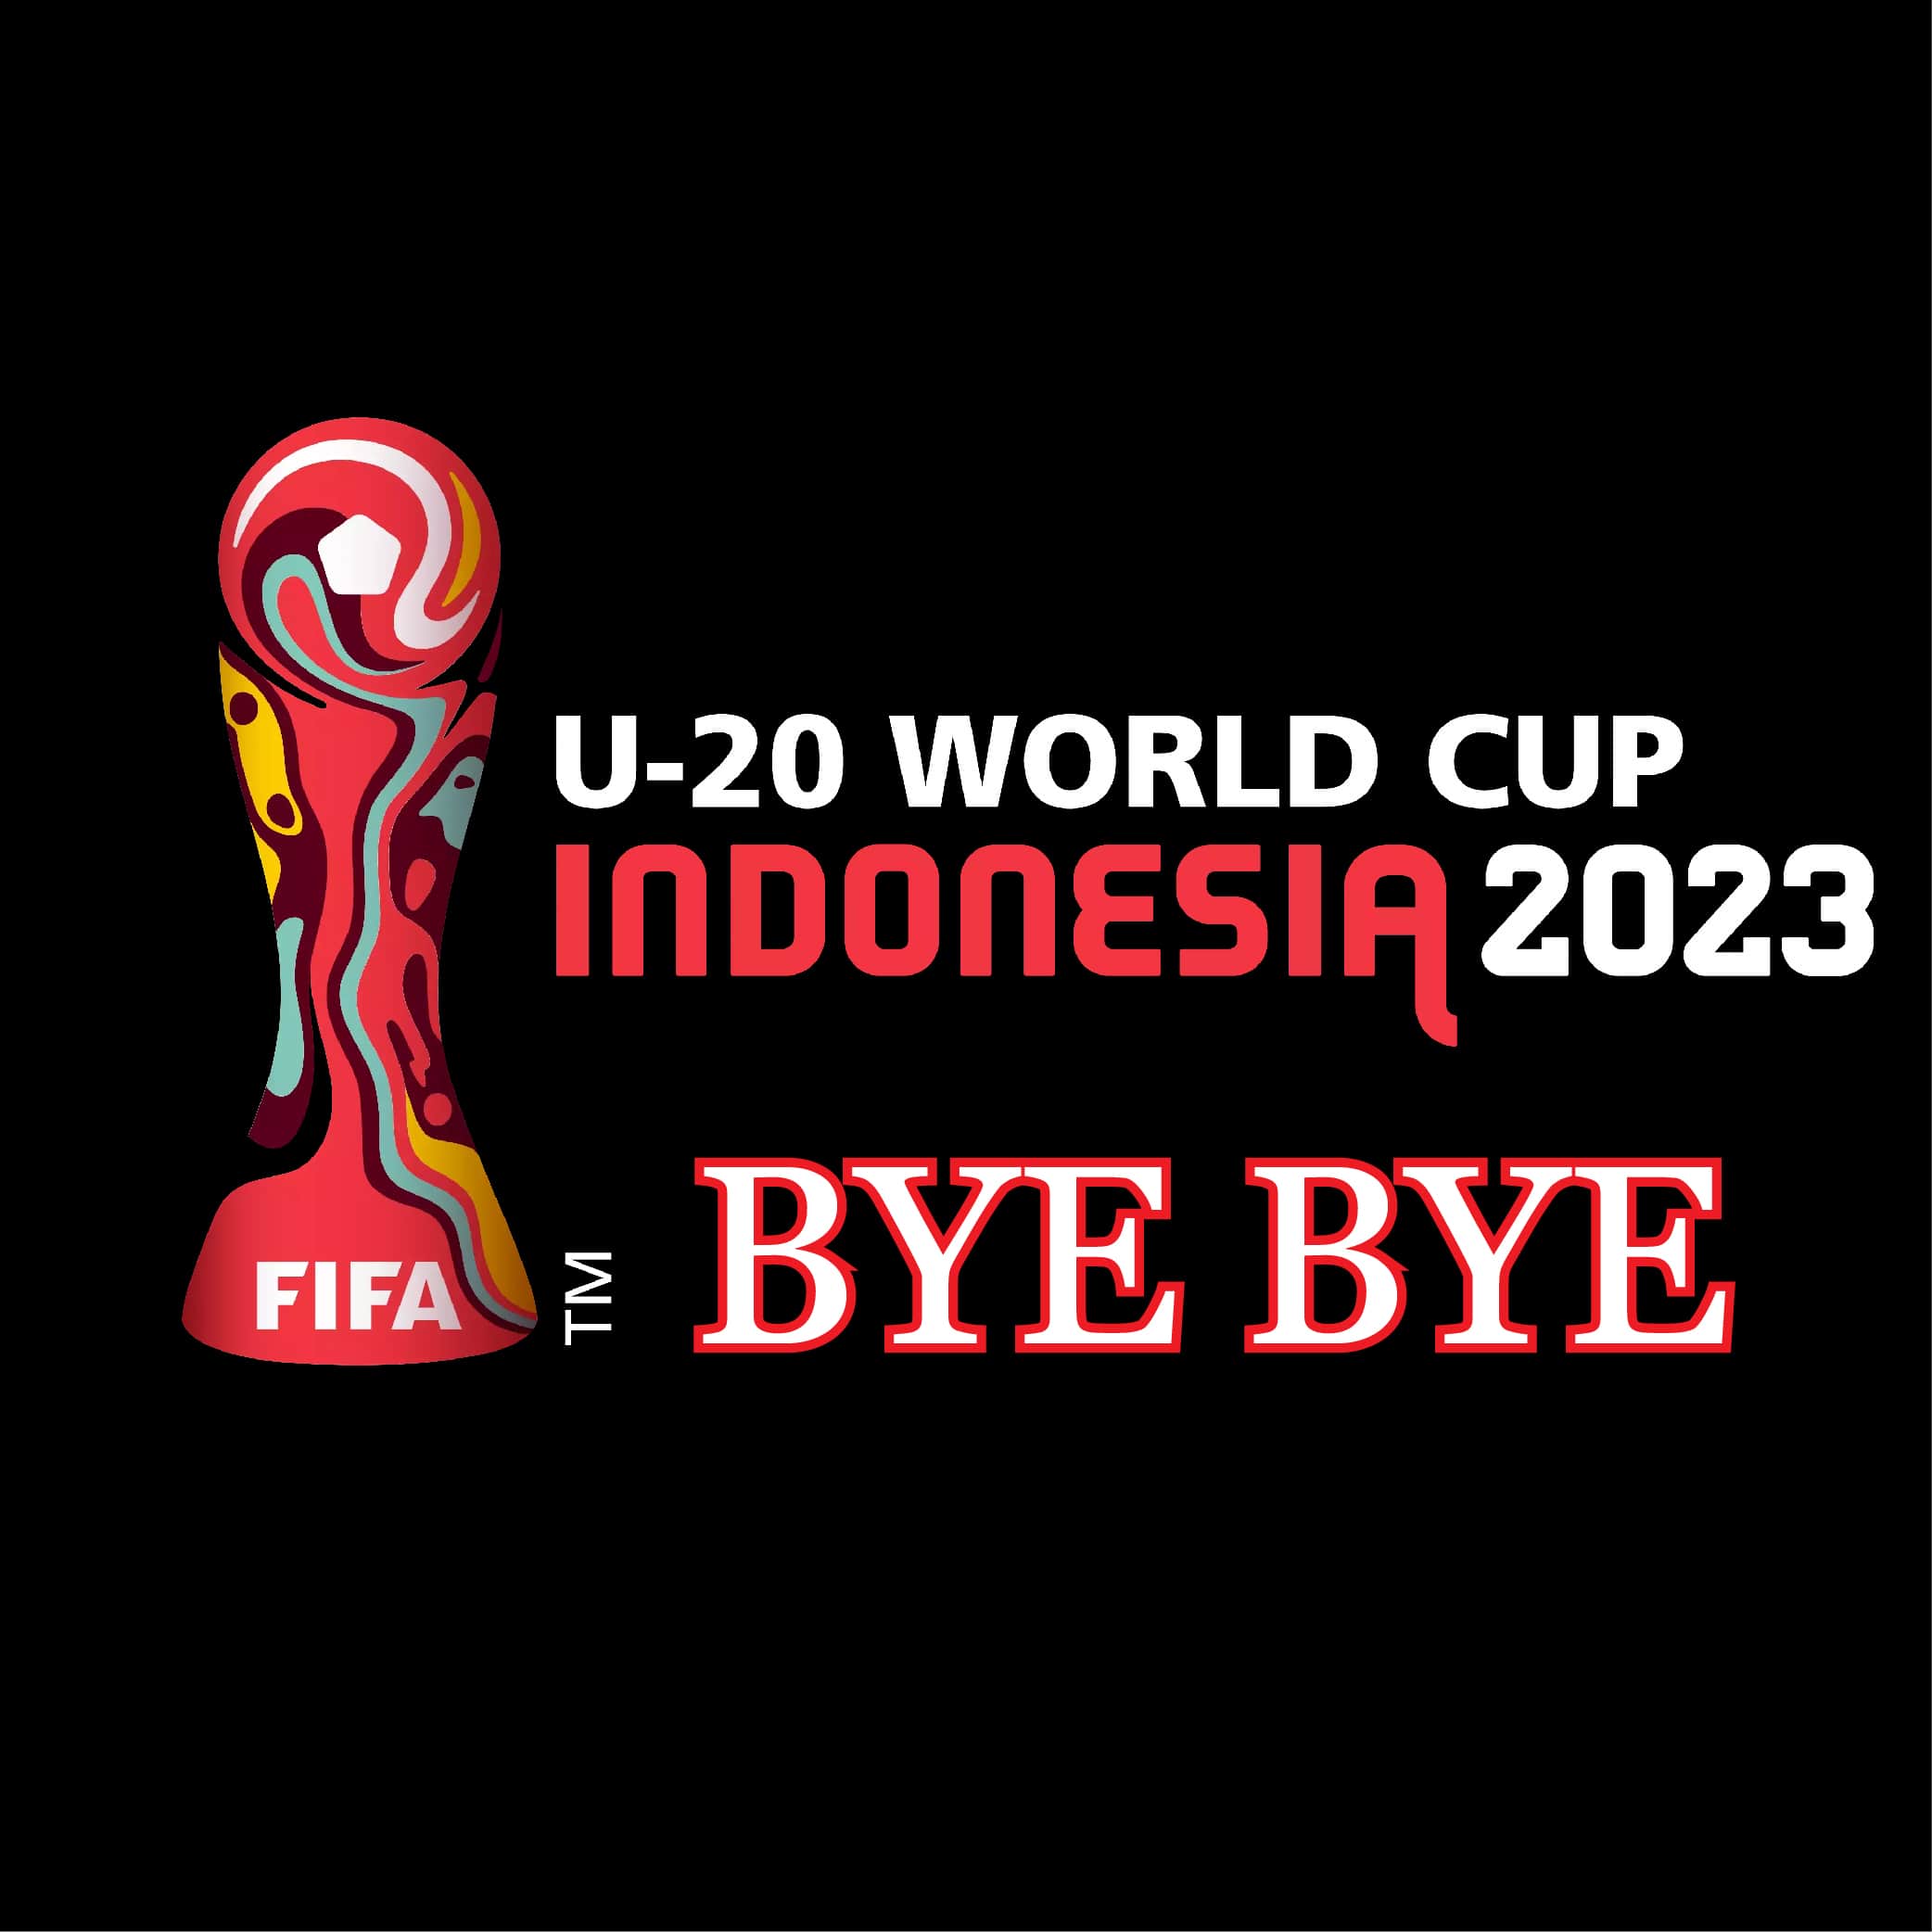 U20 World Cup đã tạm biệt Indonesia để chuyển sang Argentina